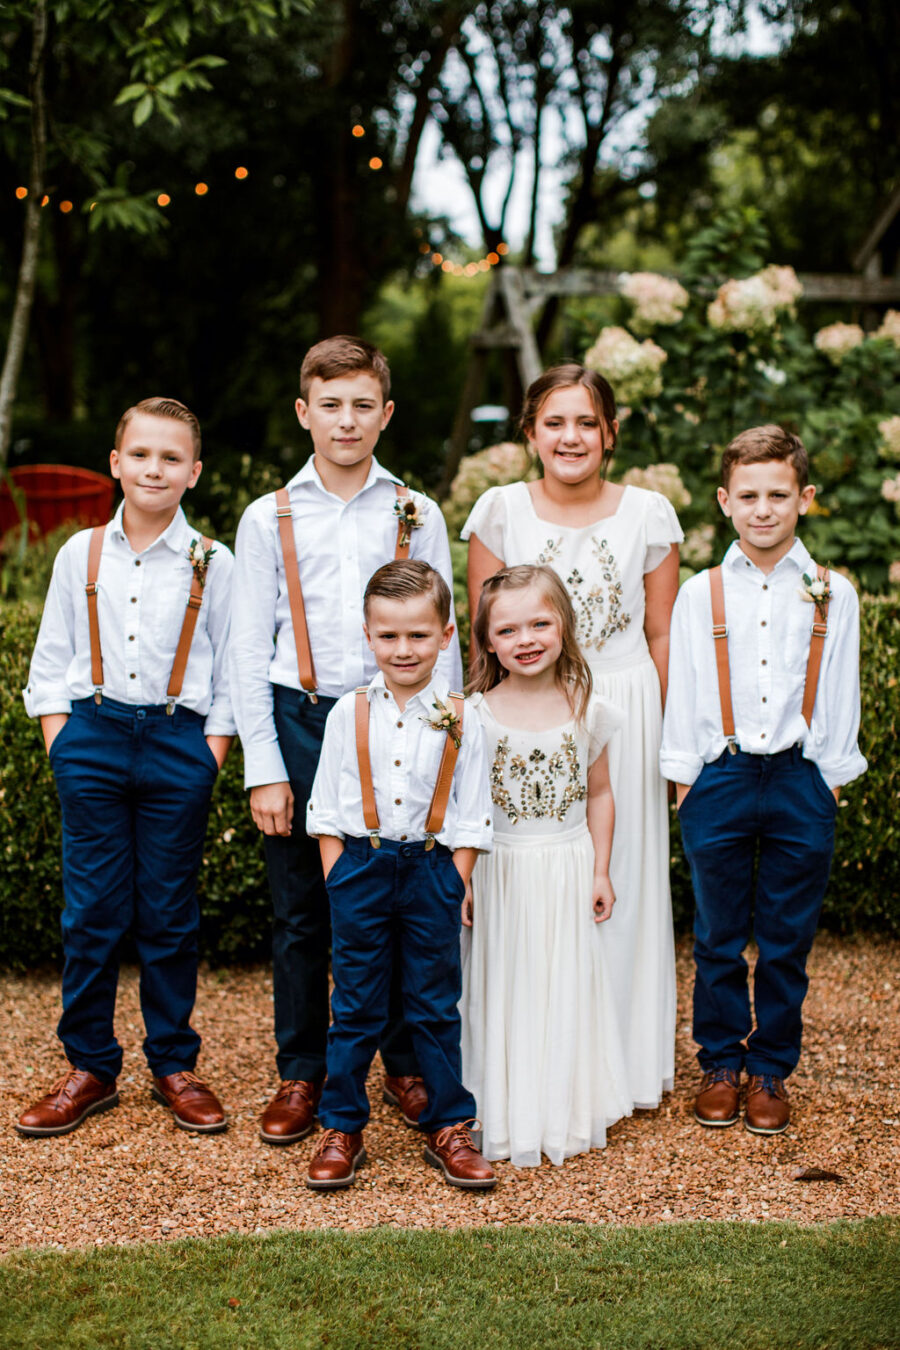 Boho wedding flower girls and ring bearer | Nashville Bride Guide